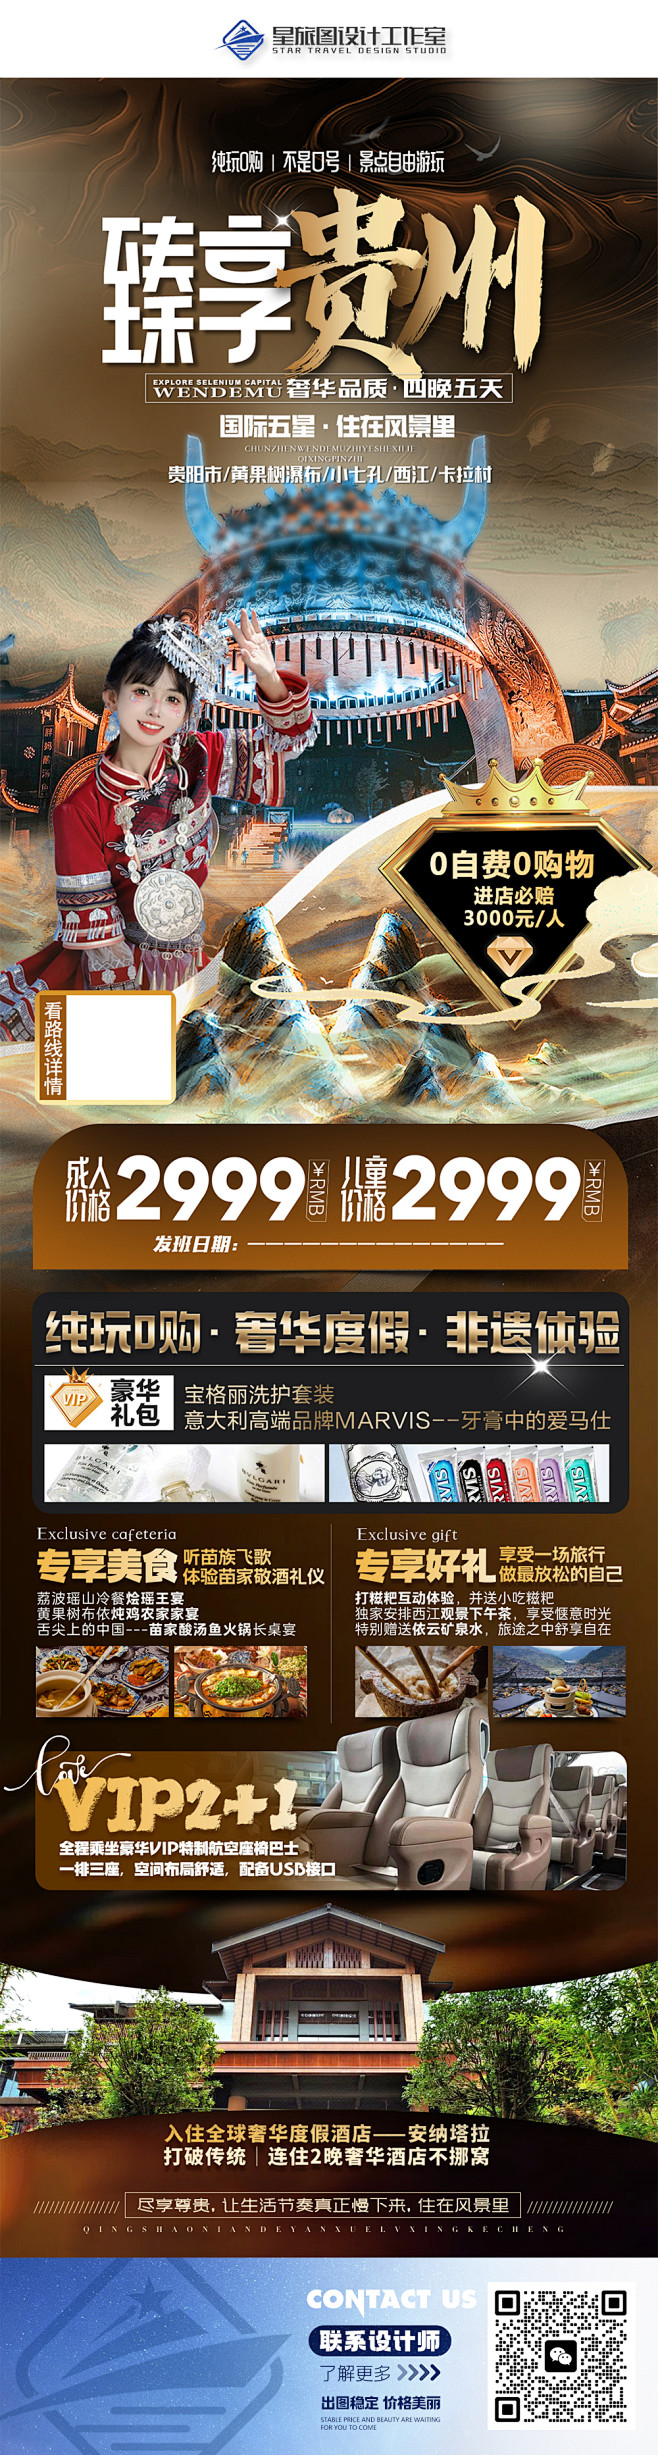 贵州高端旅游海报设计